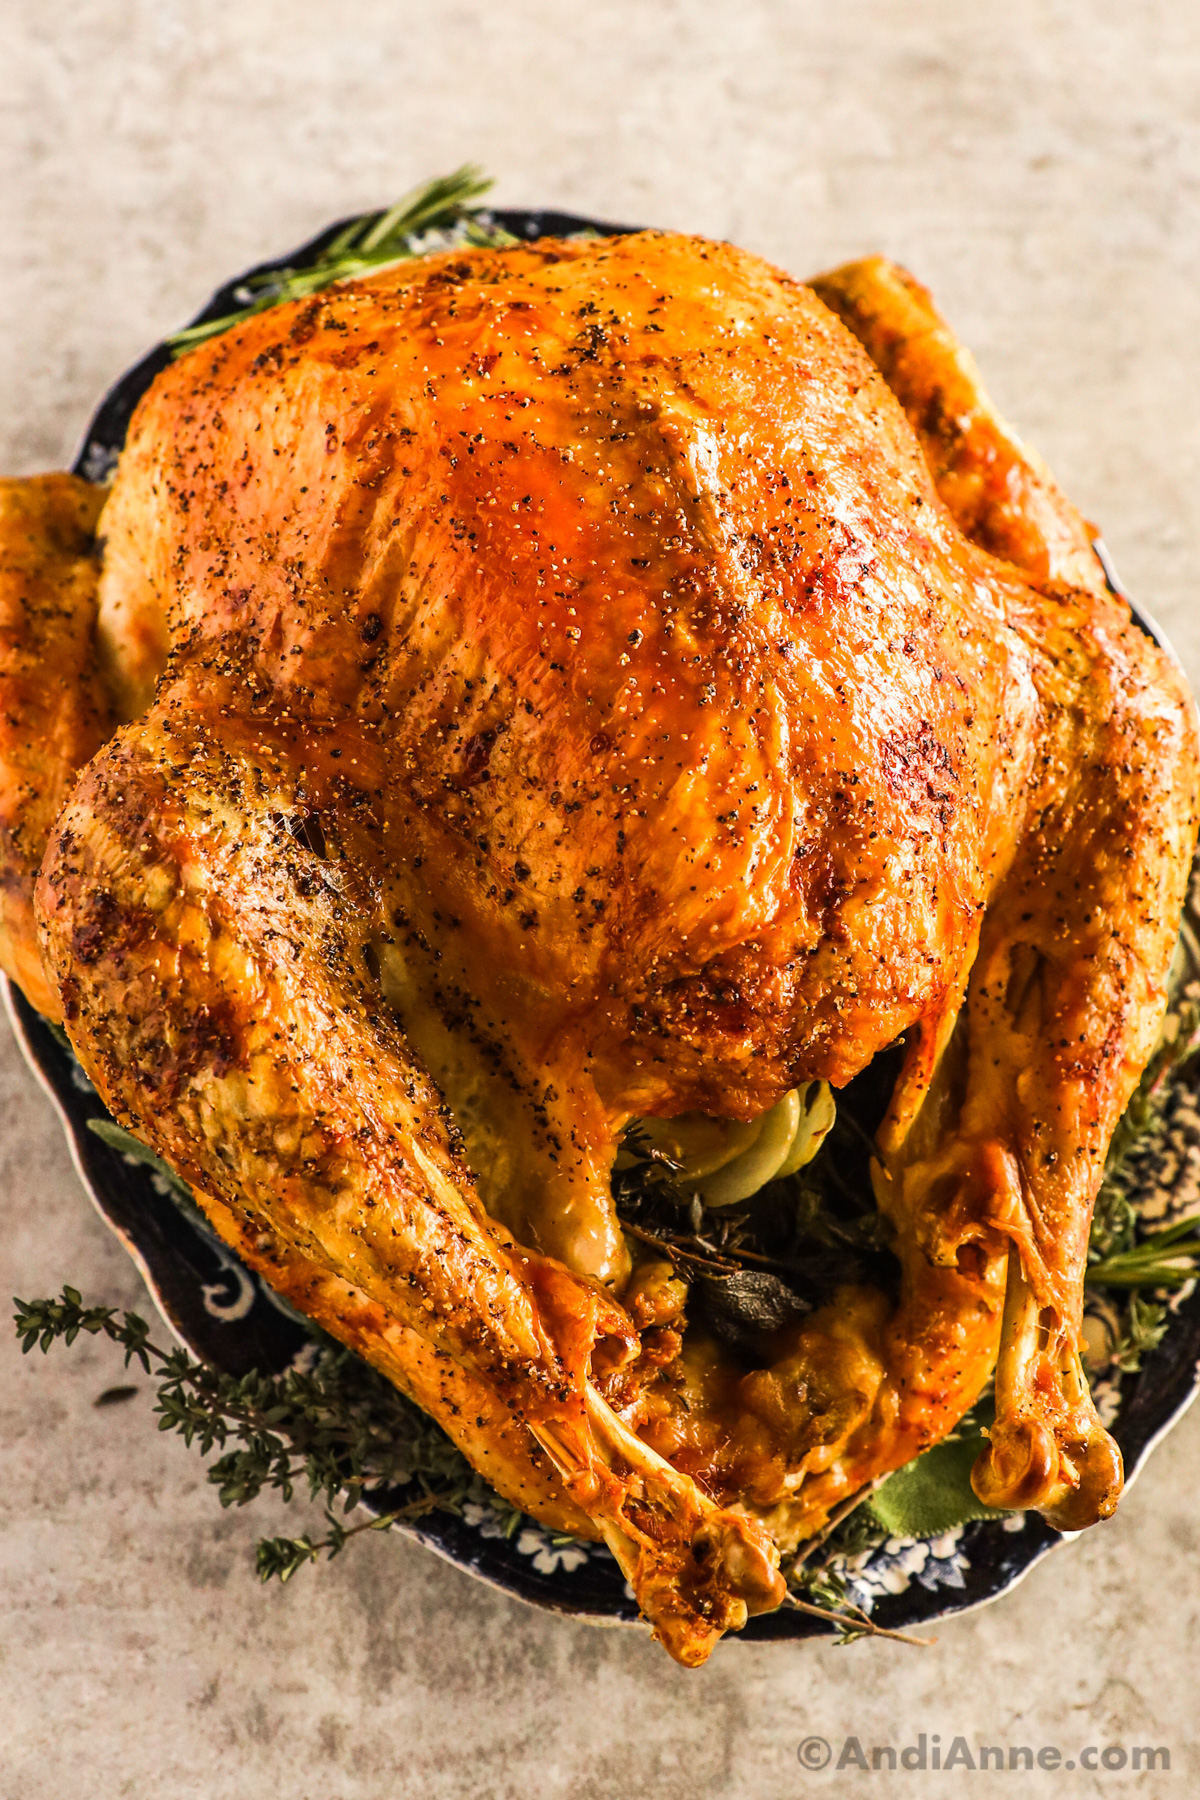 A roasted turkey on a plate.